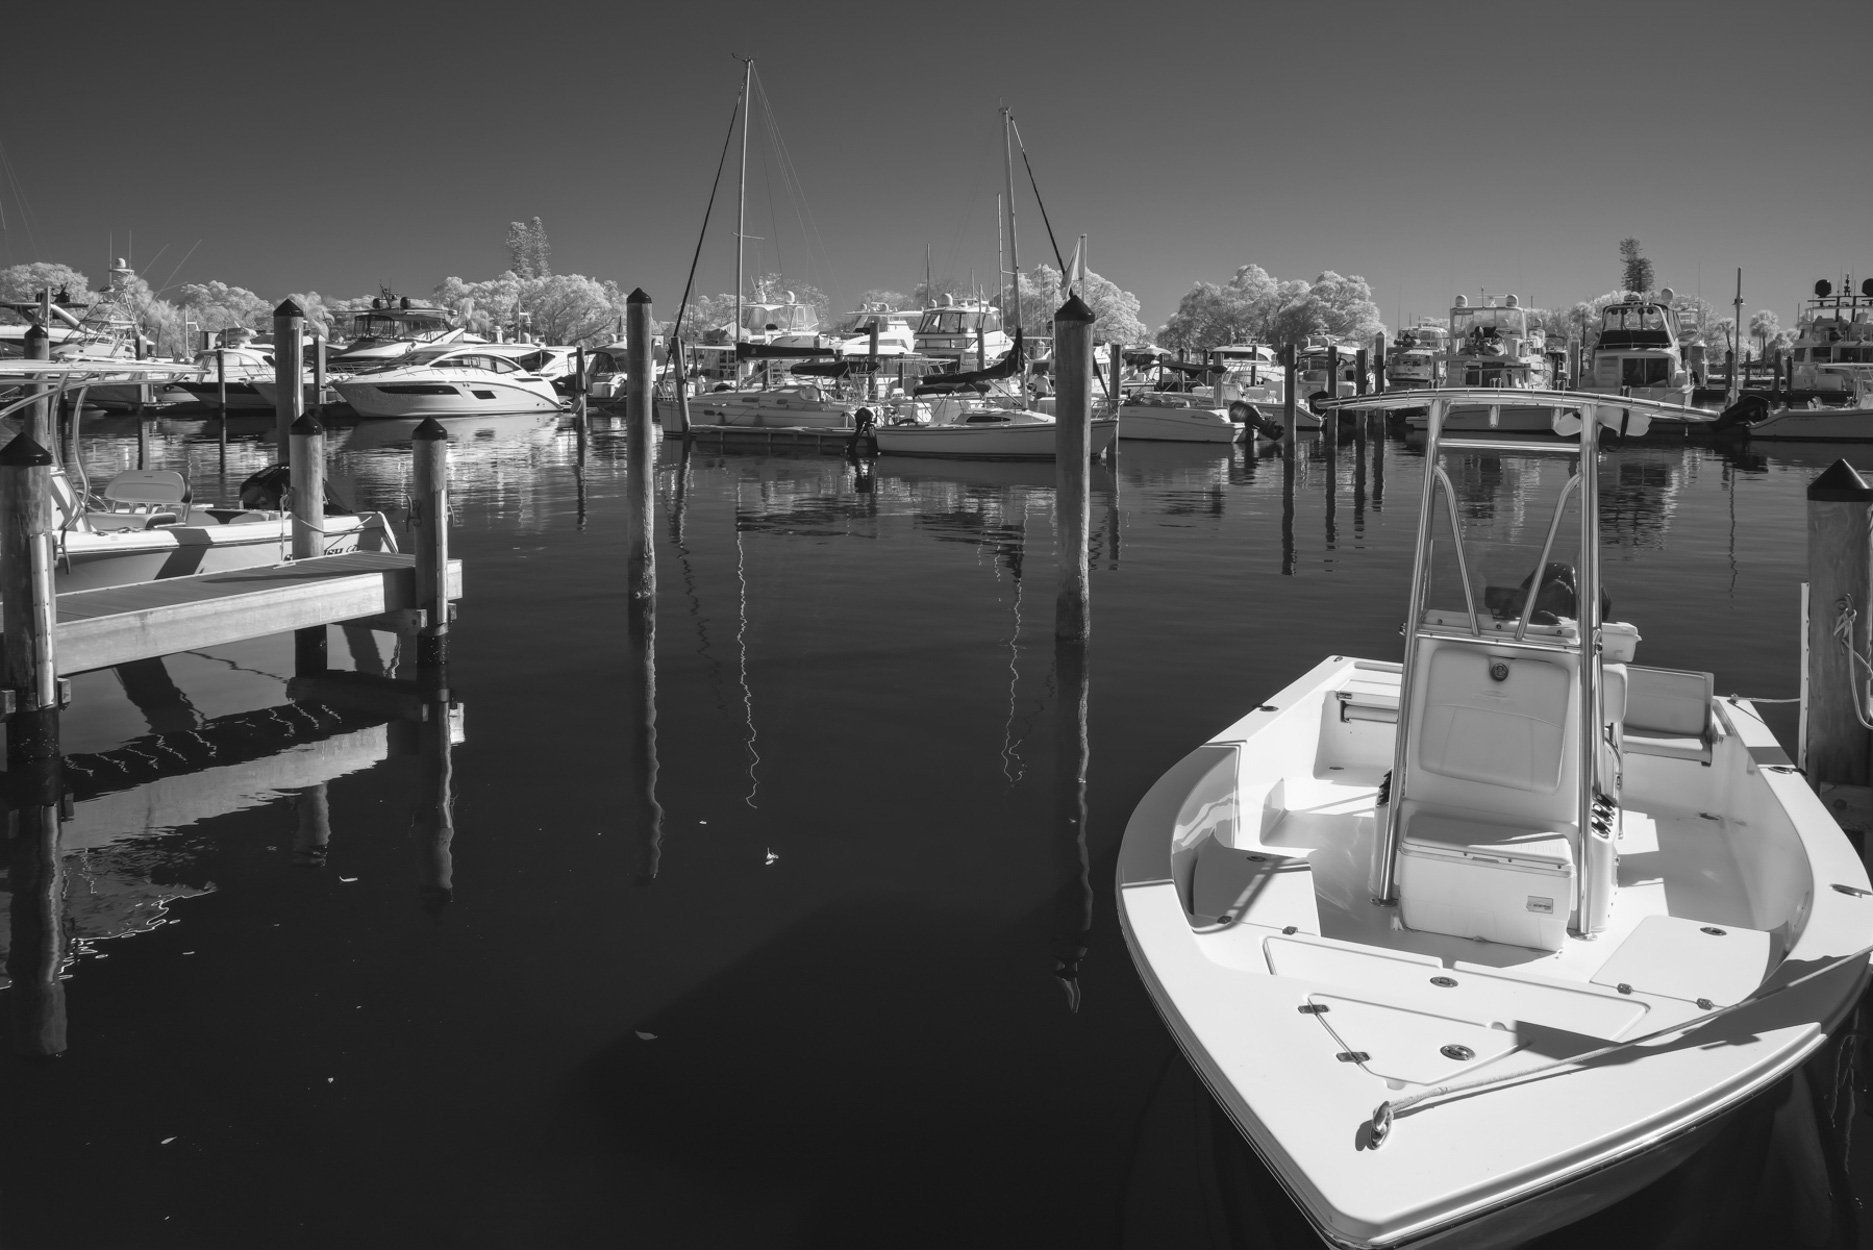 Boats and Dock, Sarasota, 2022